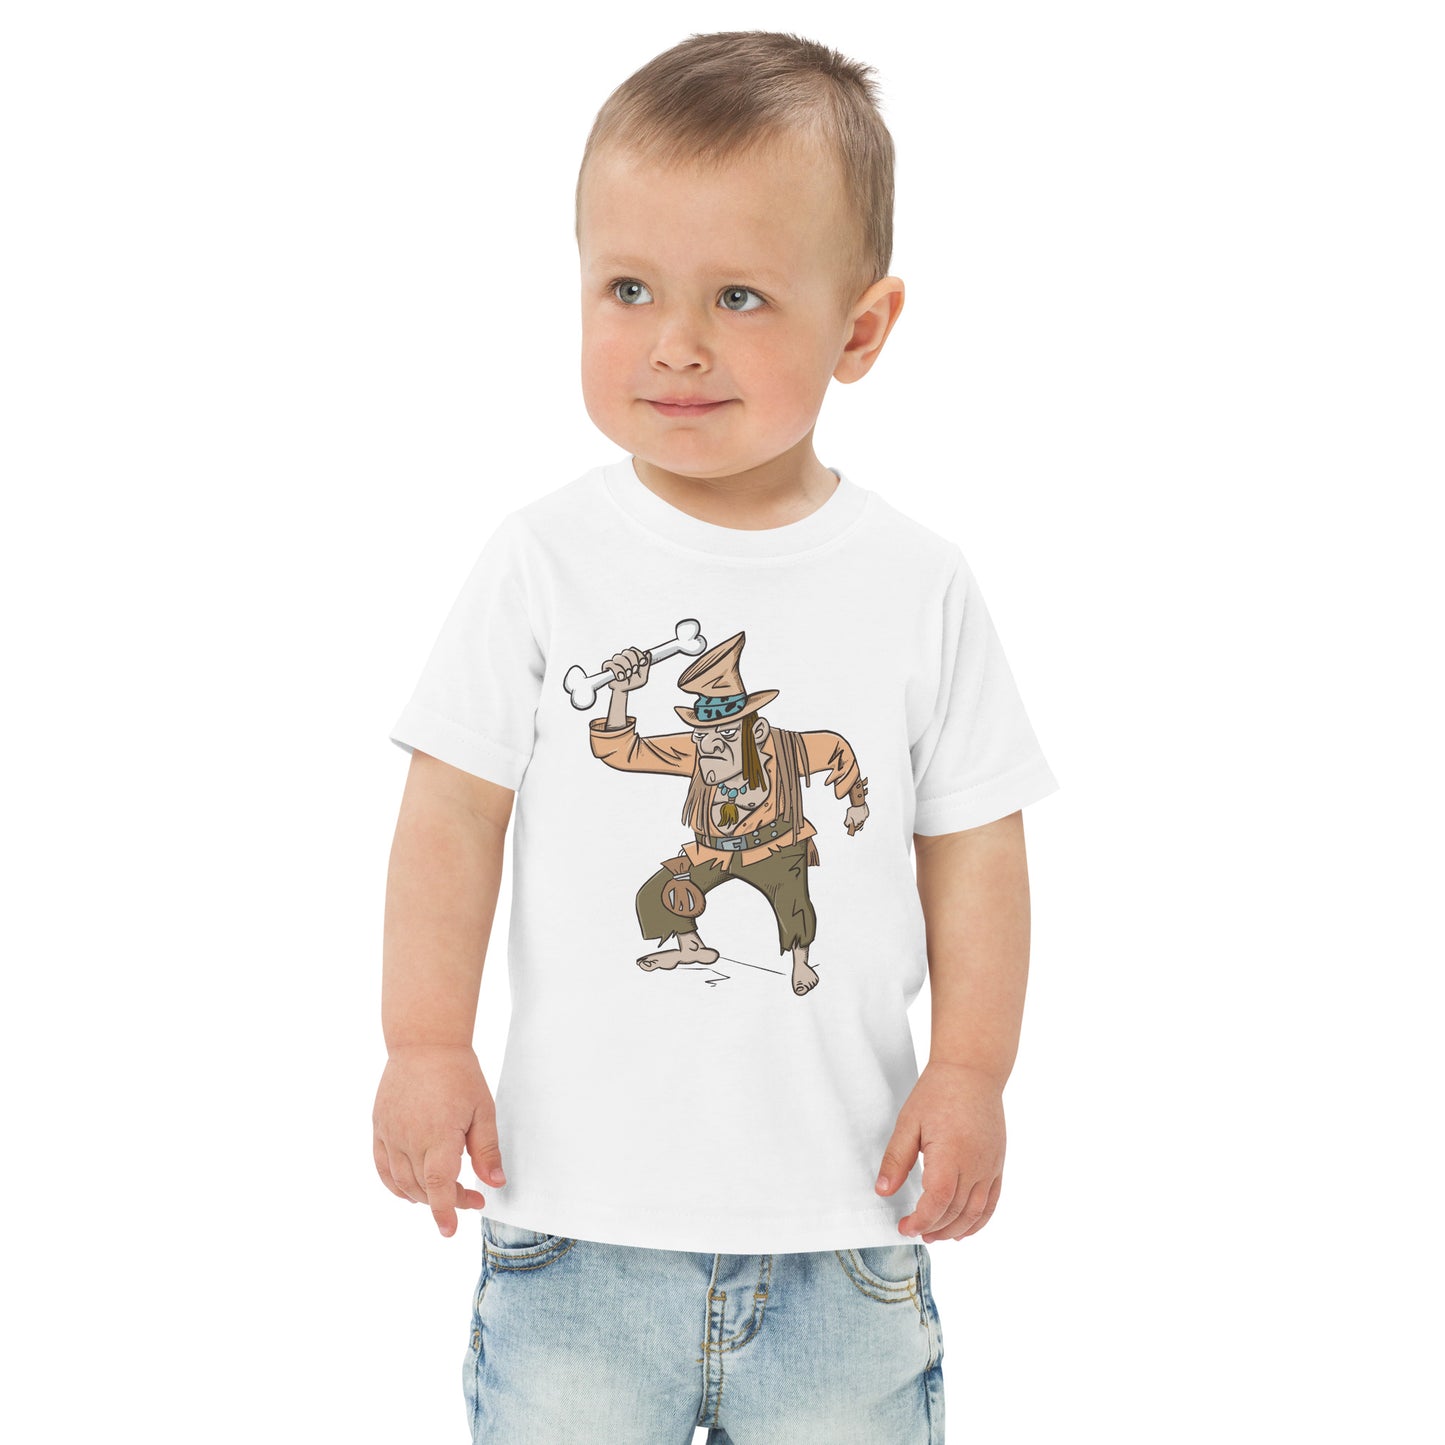 WhipperSnapper - Toddler jersey t-shirt